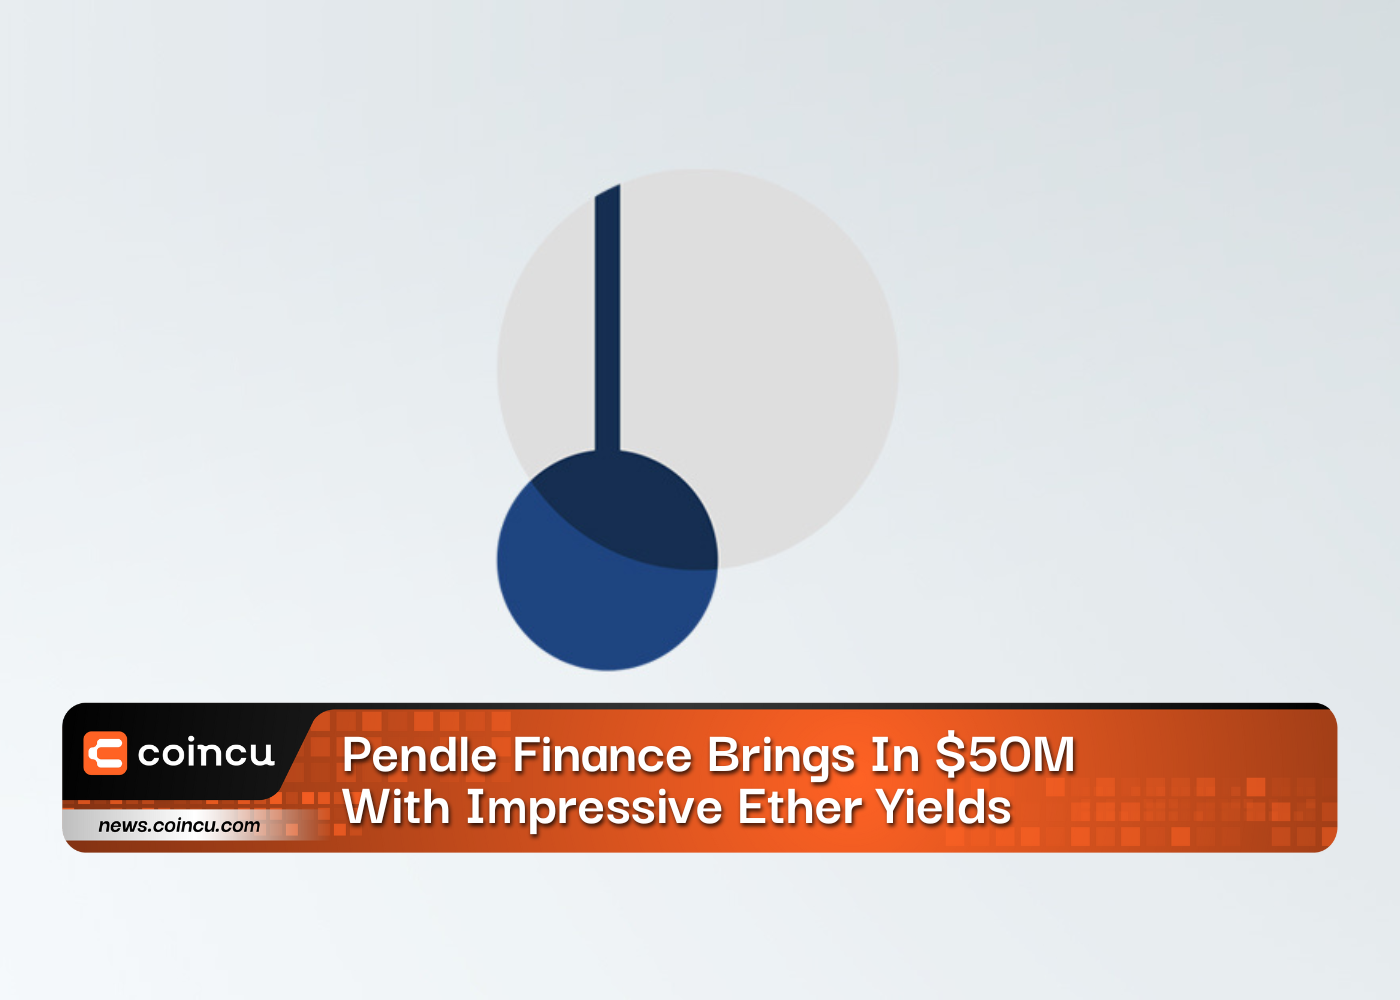 Pendle Finance Brings In 50M